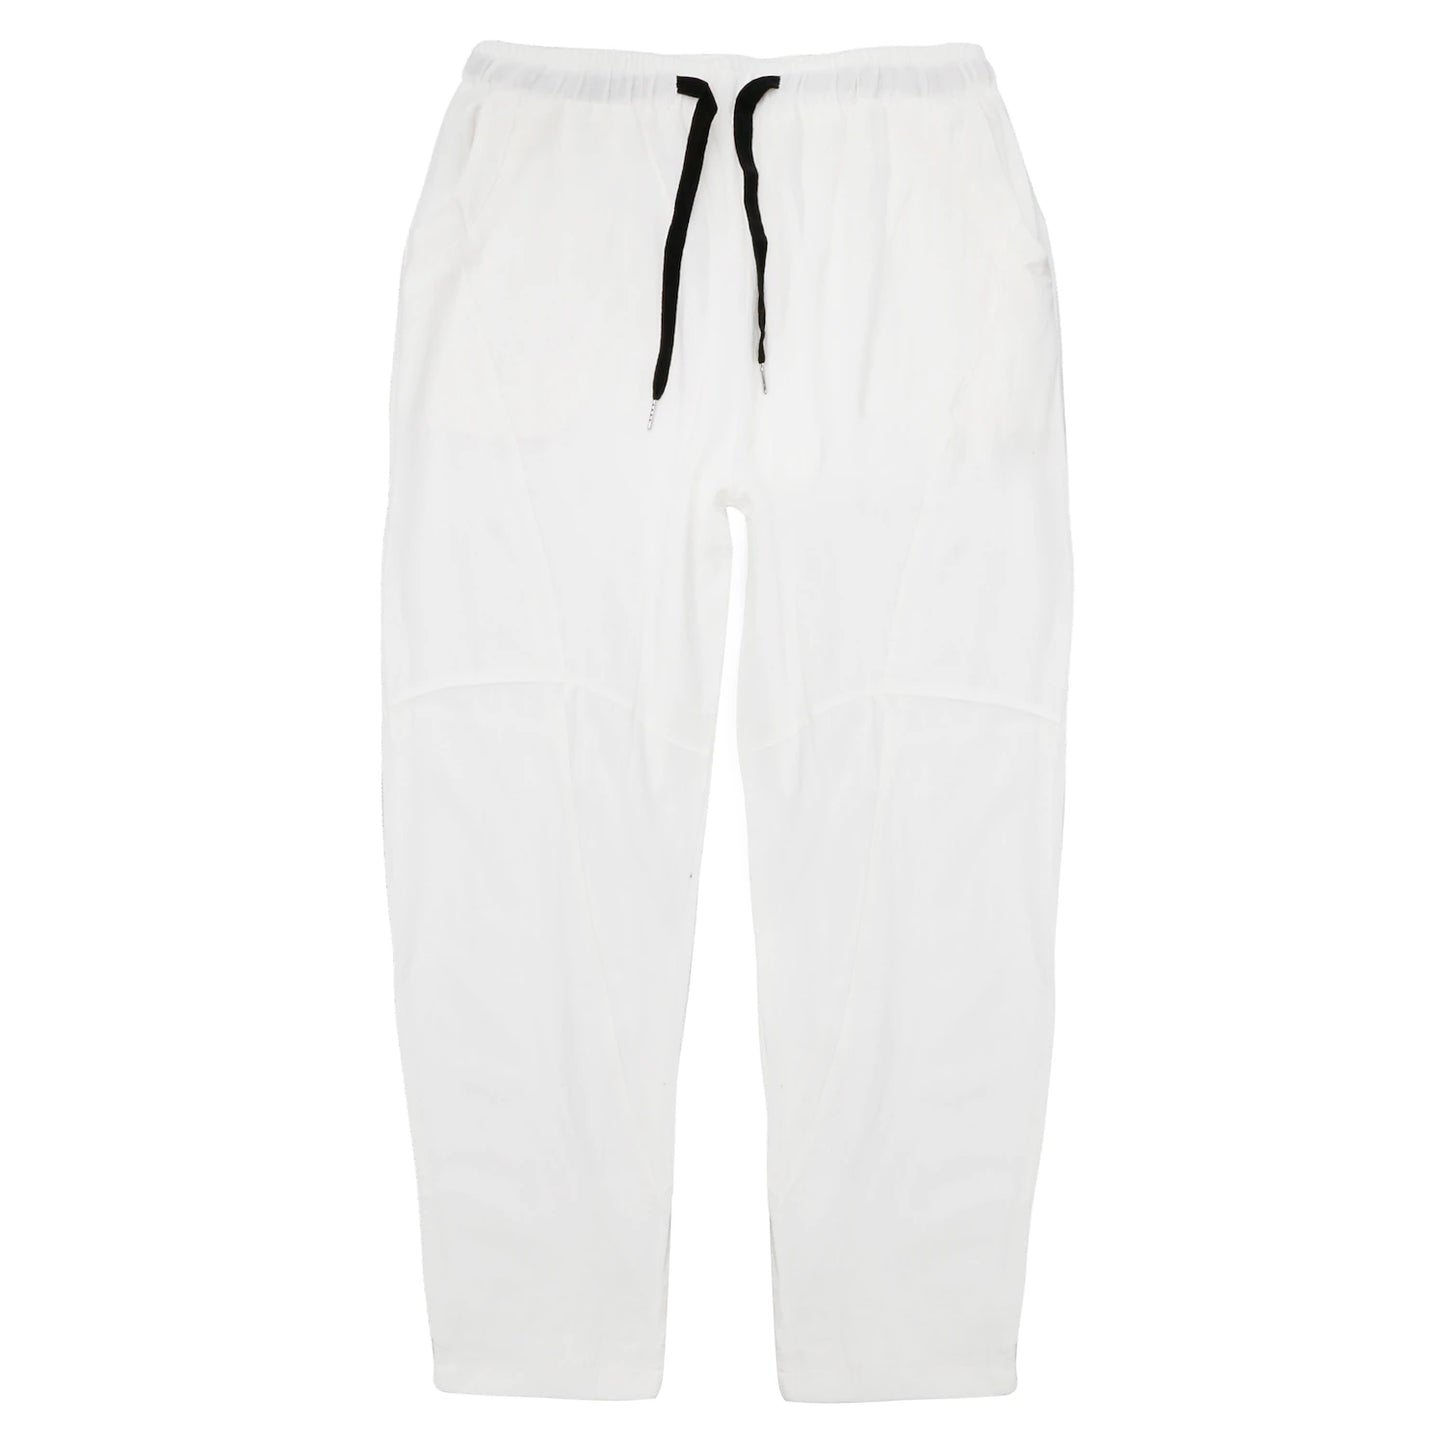 Linen Drawstring Beach Pants for Men - Black/White